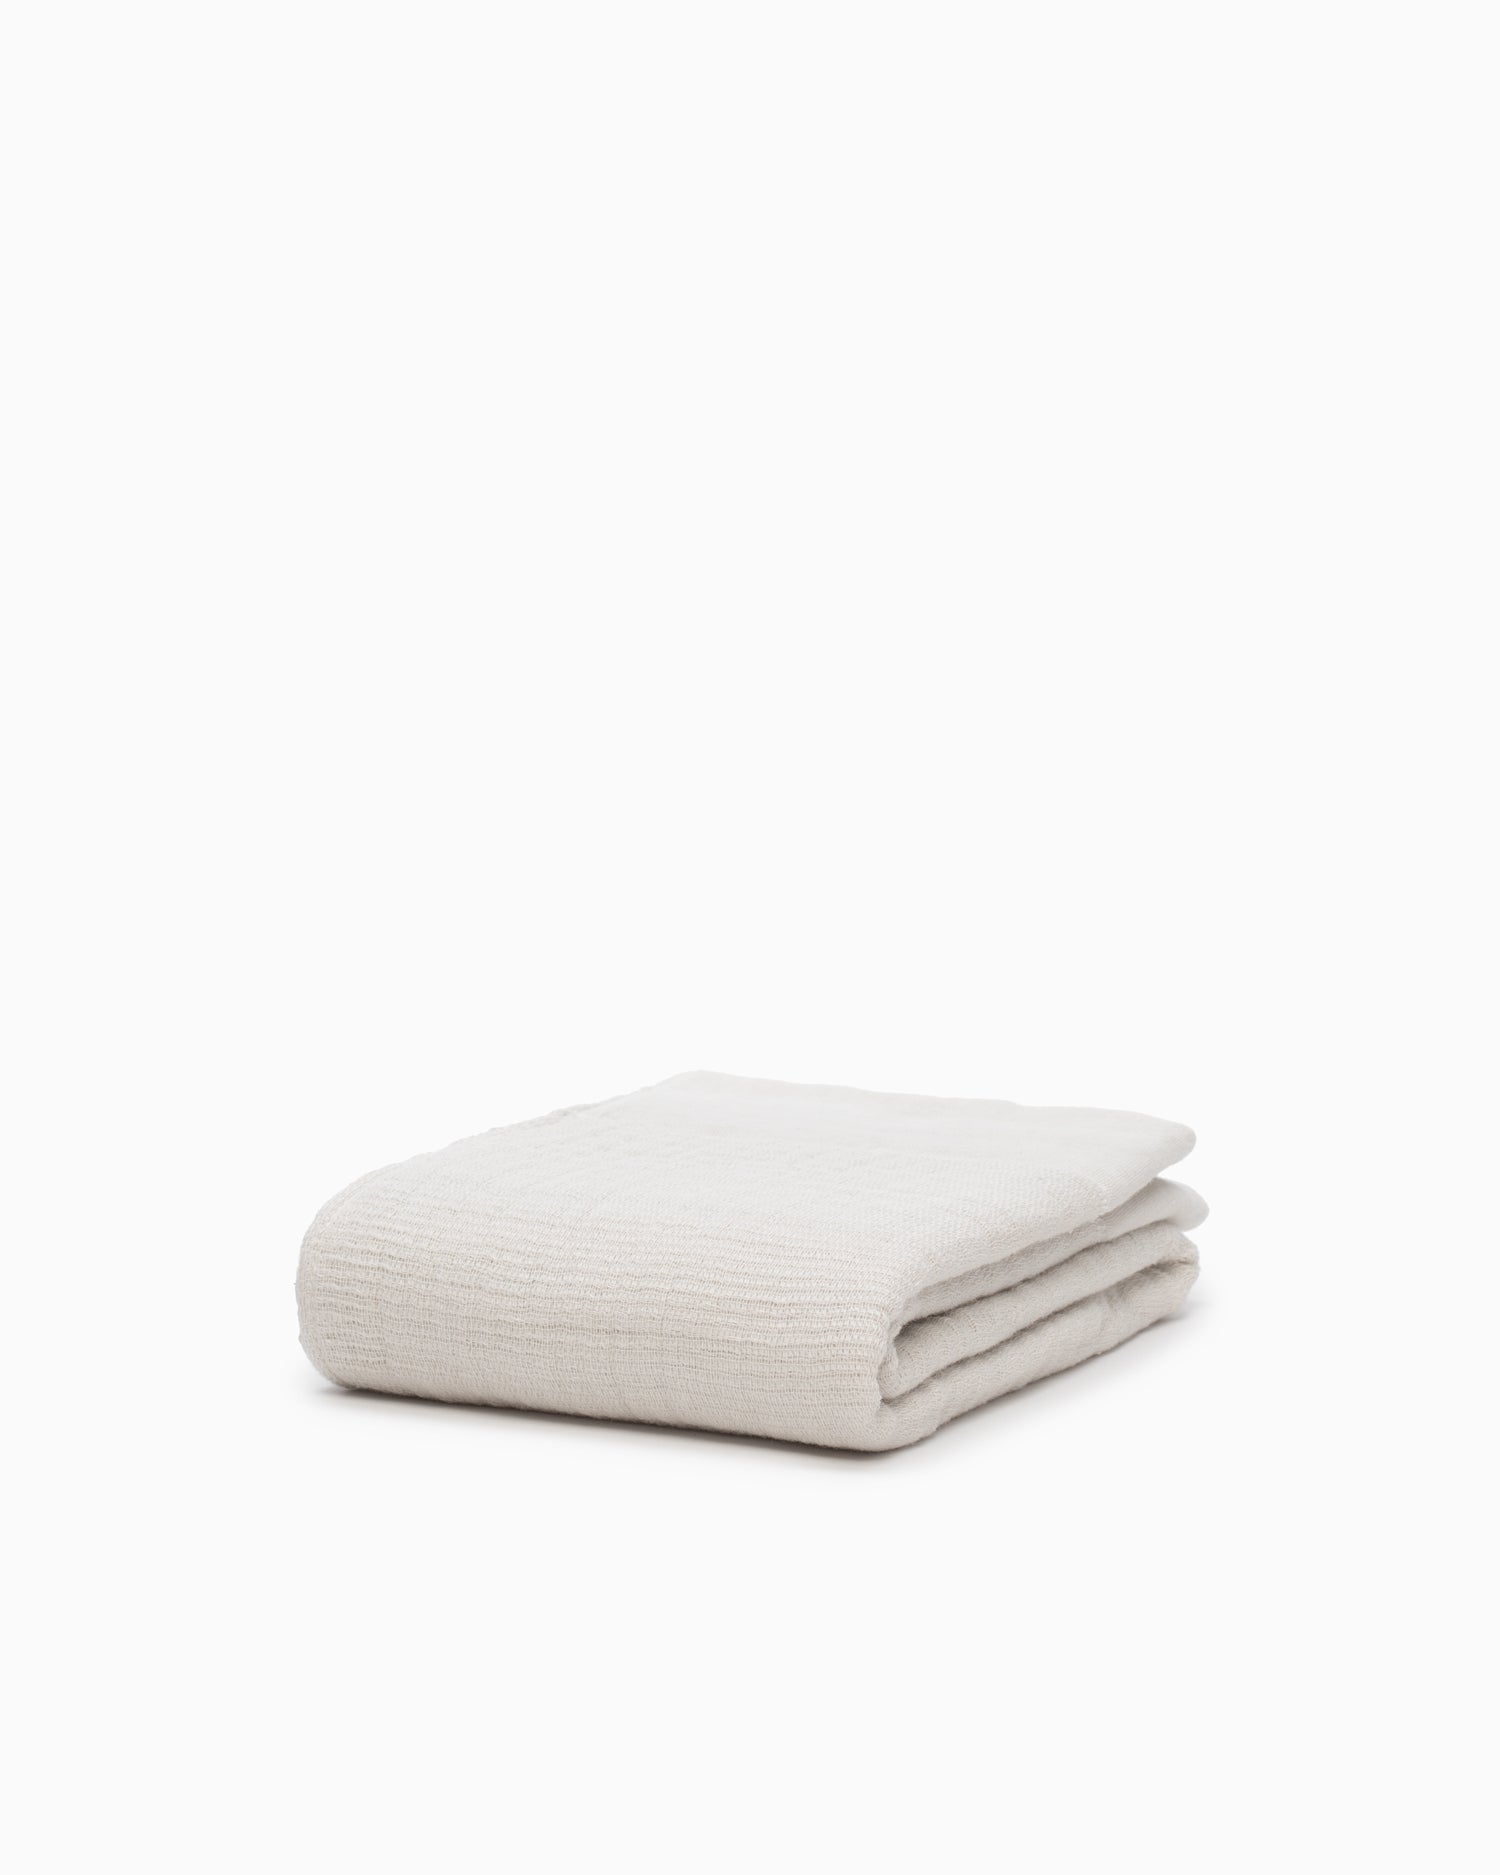 Inner Pile Hand Towel - Ivory